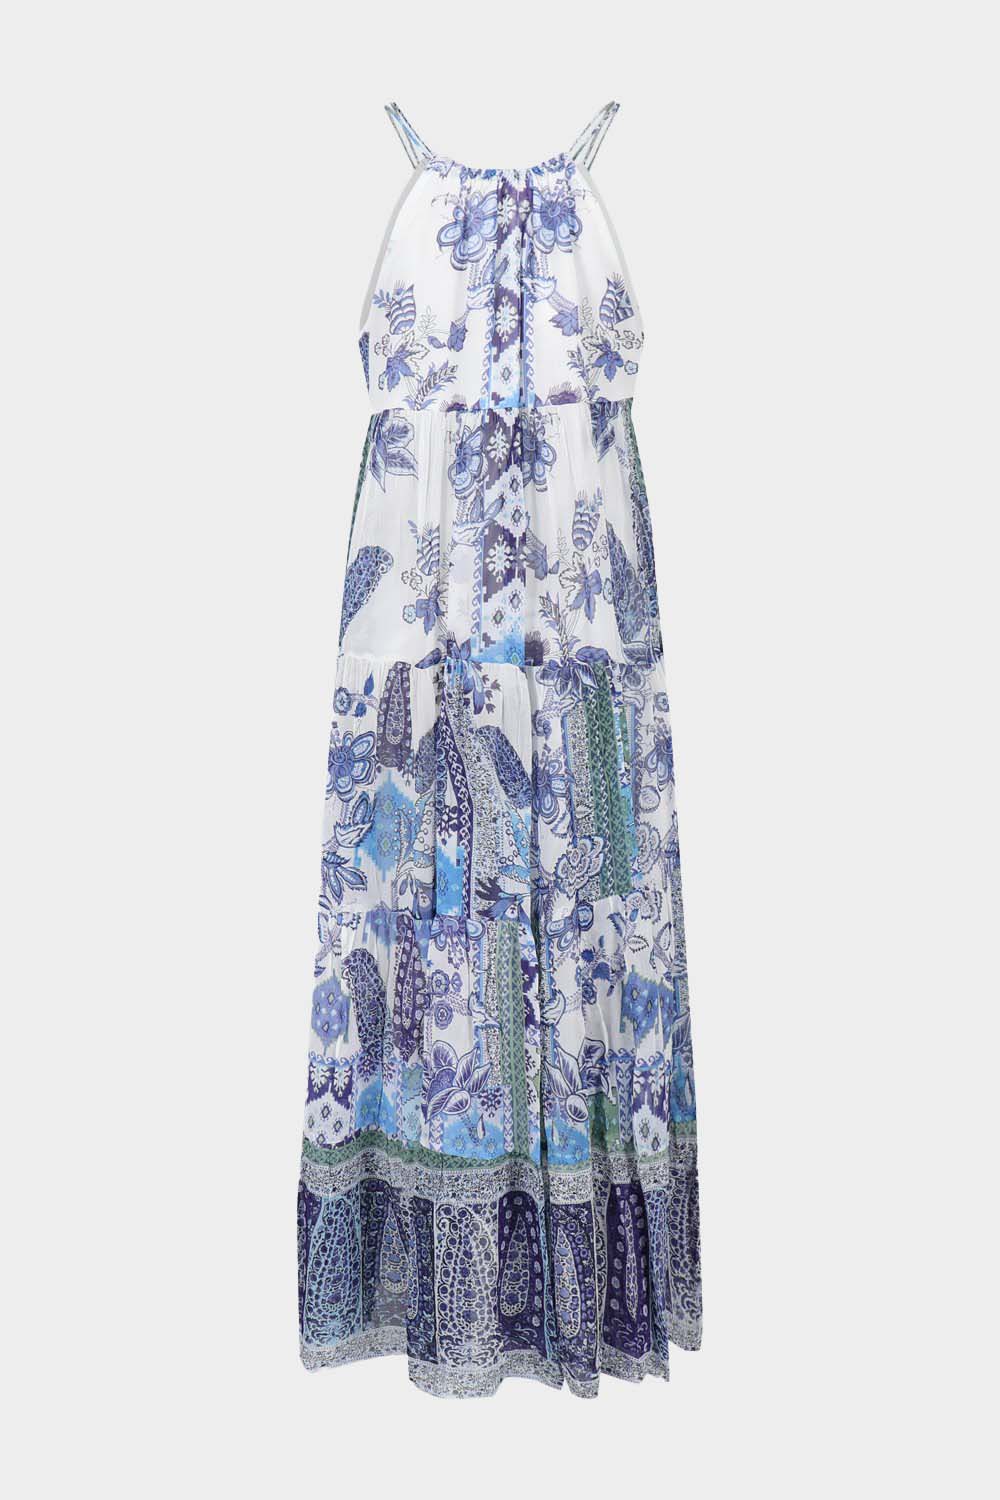 שמלת SAMARKAND לנשים הדפס אתני פרחוני RENE DERHY Vendome online | ונדום .